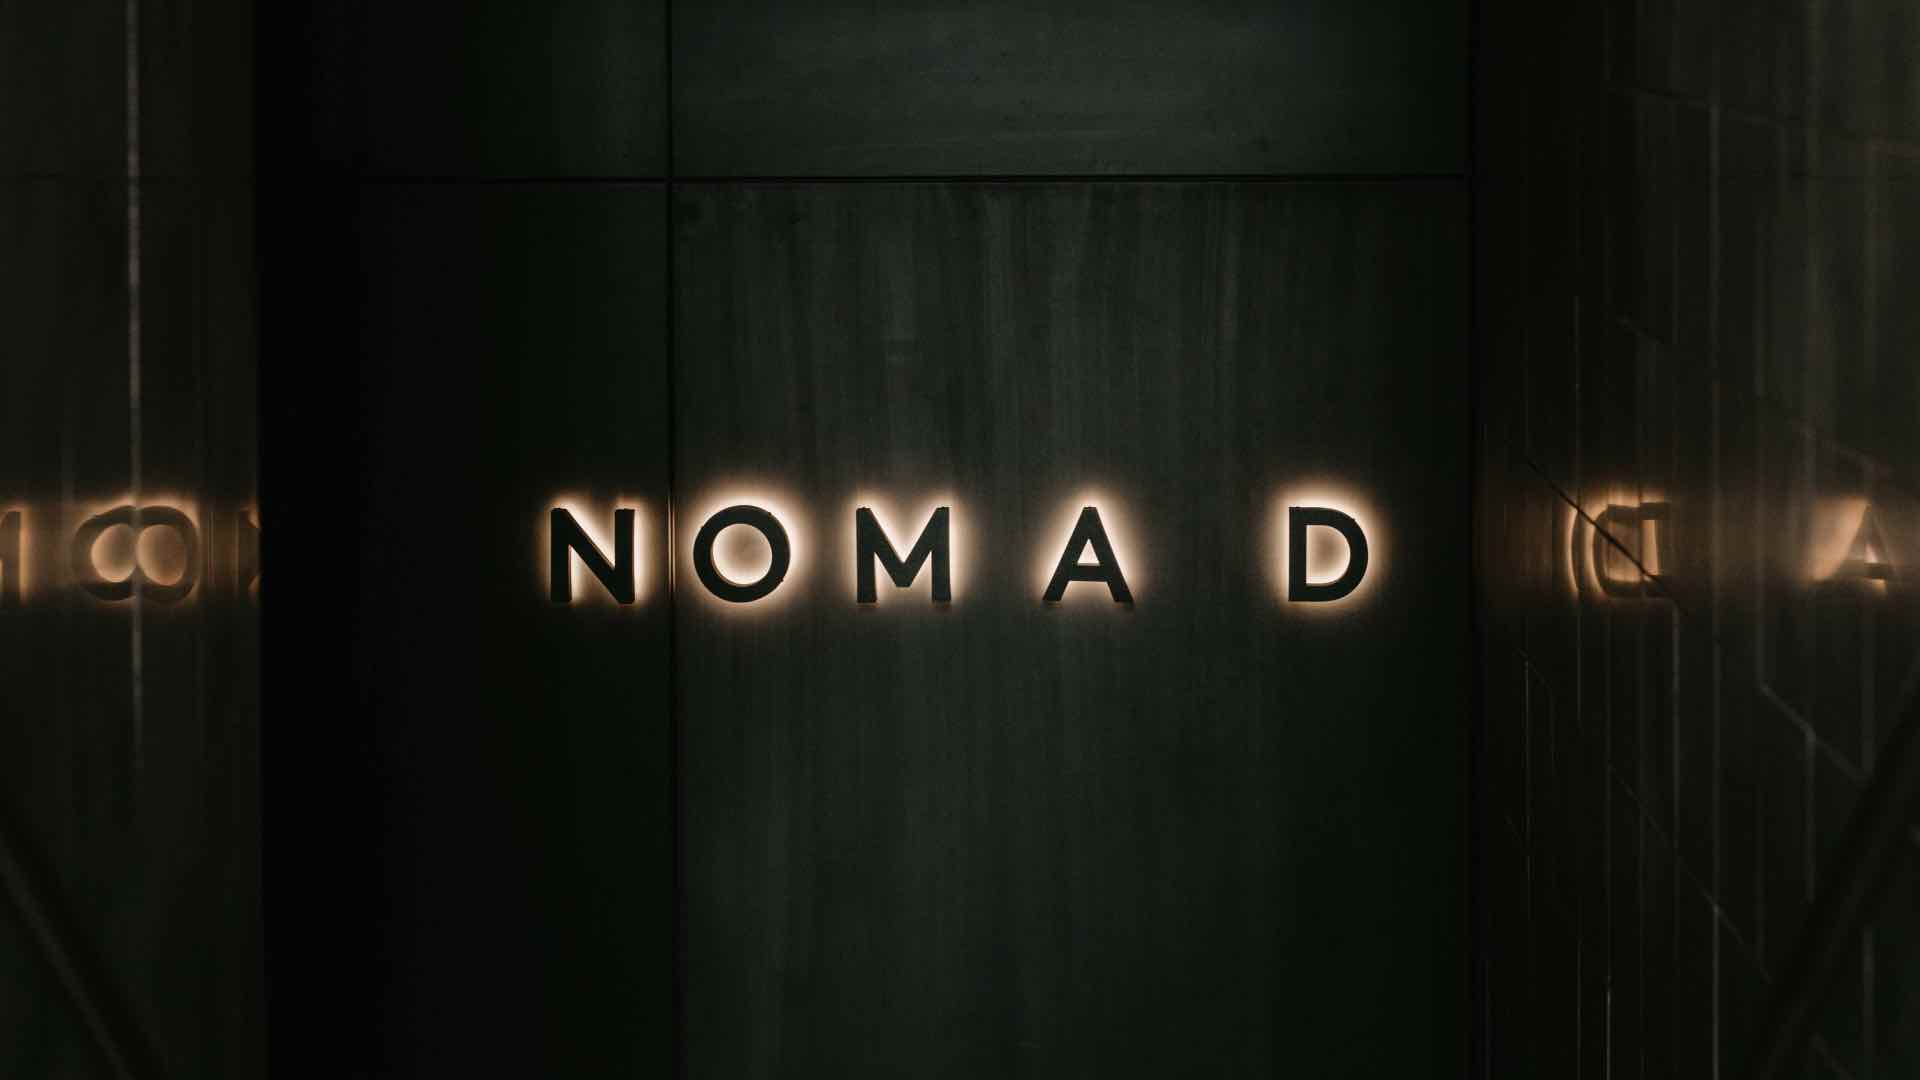 Nomad signage